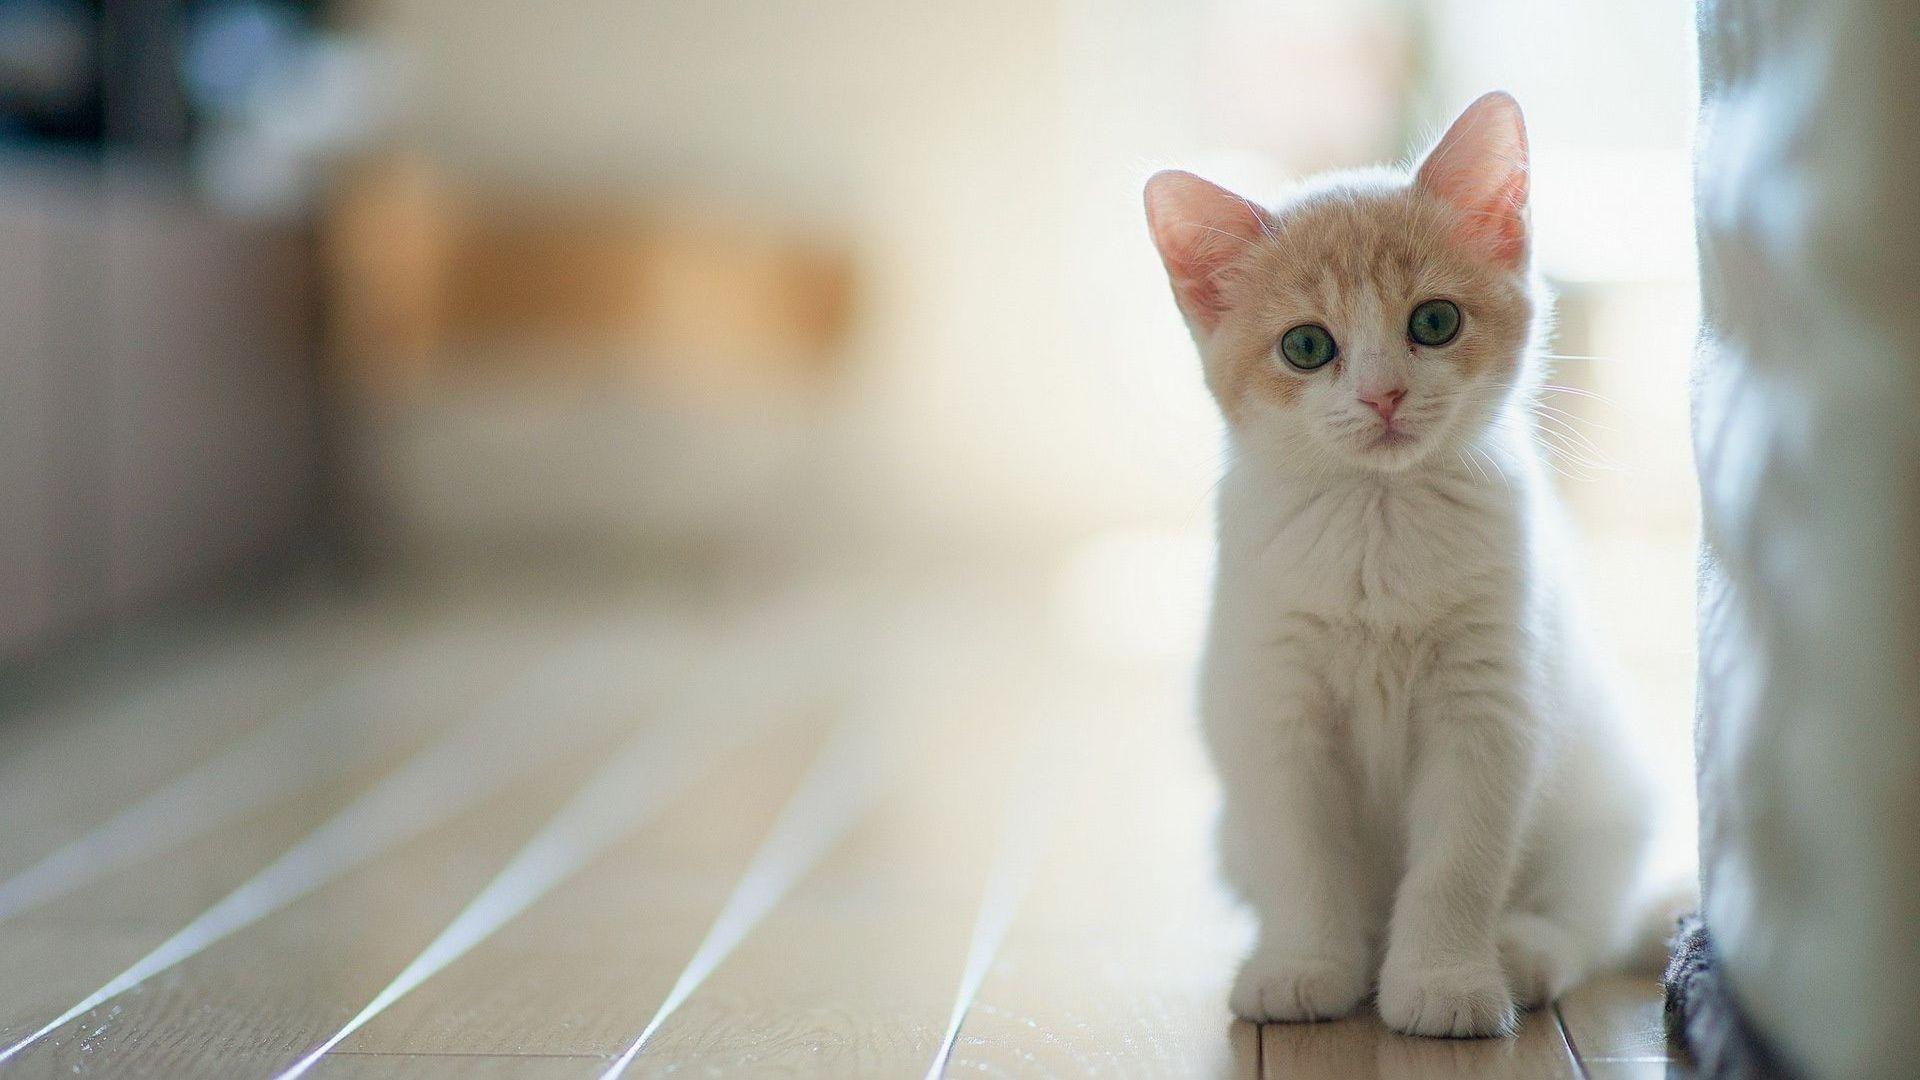 Cute Kitten Desktop Wallpapers - Top Free Cute Kitten Desktop